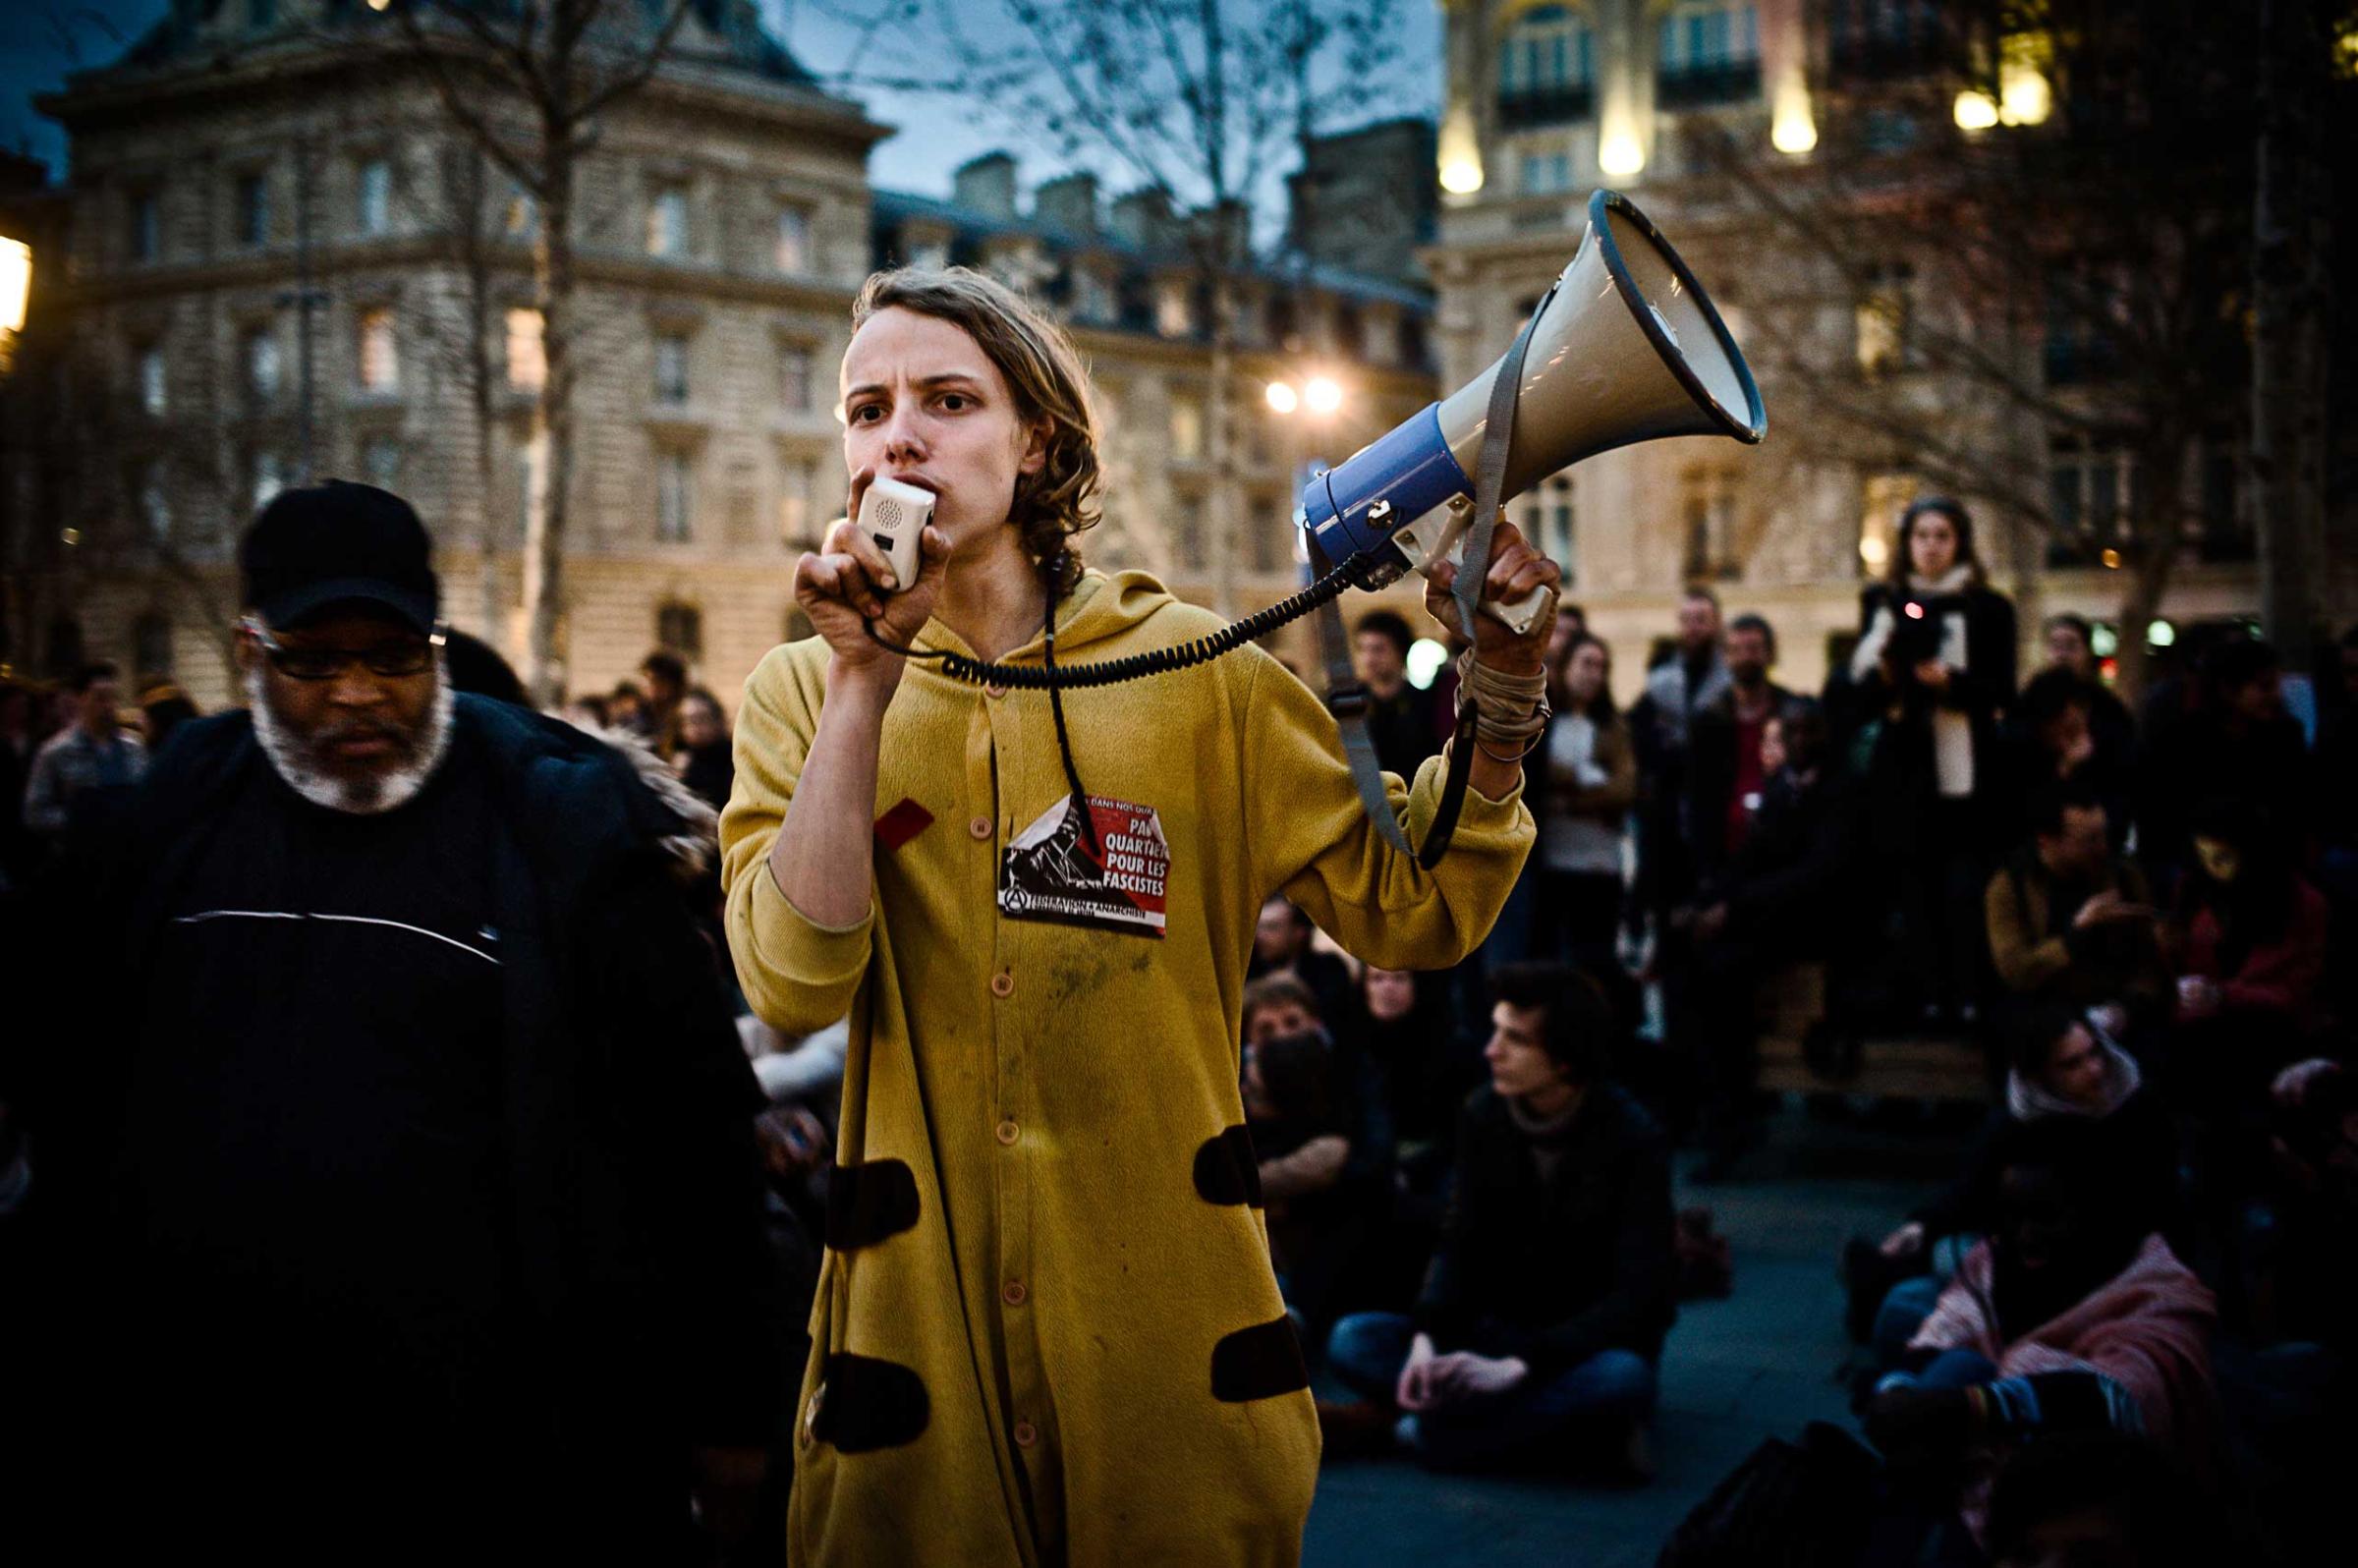 A representative of the Nanterre University students, speaks to the crowds in the Place de la République.